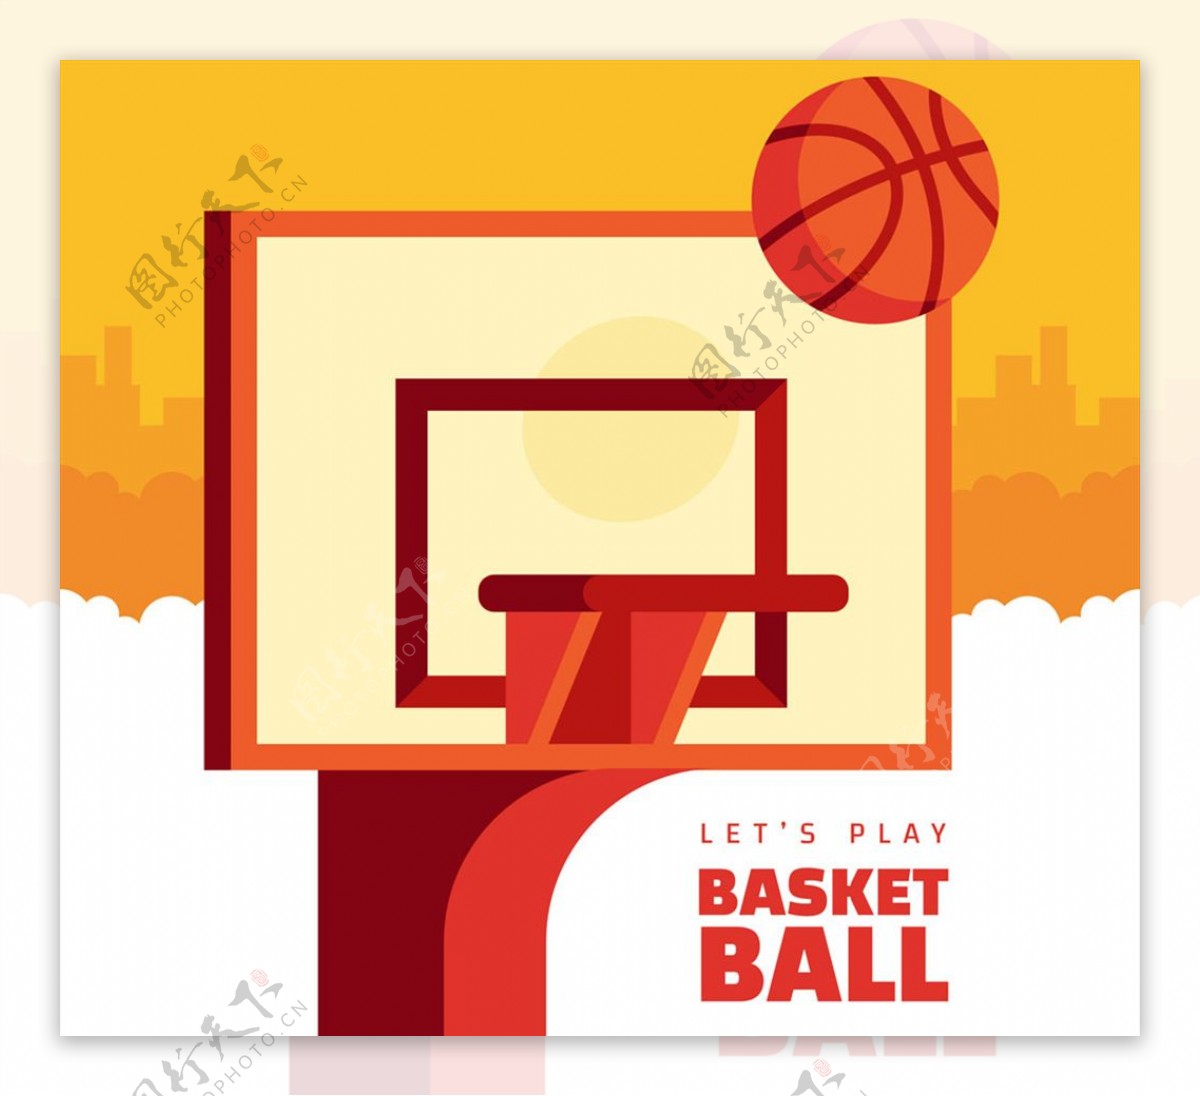 扁平化篮球架和篮球矢量素材